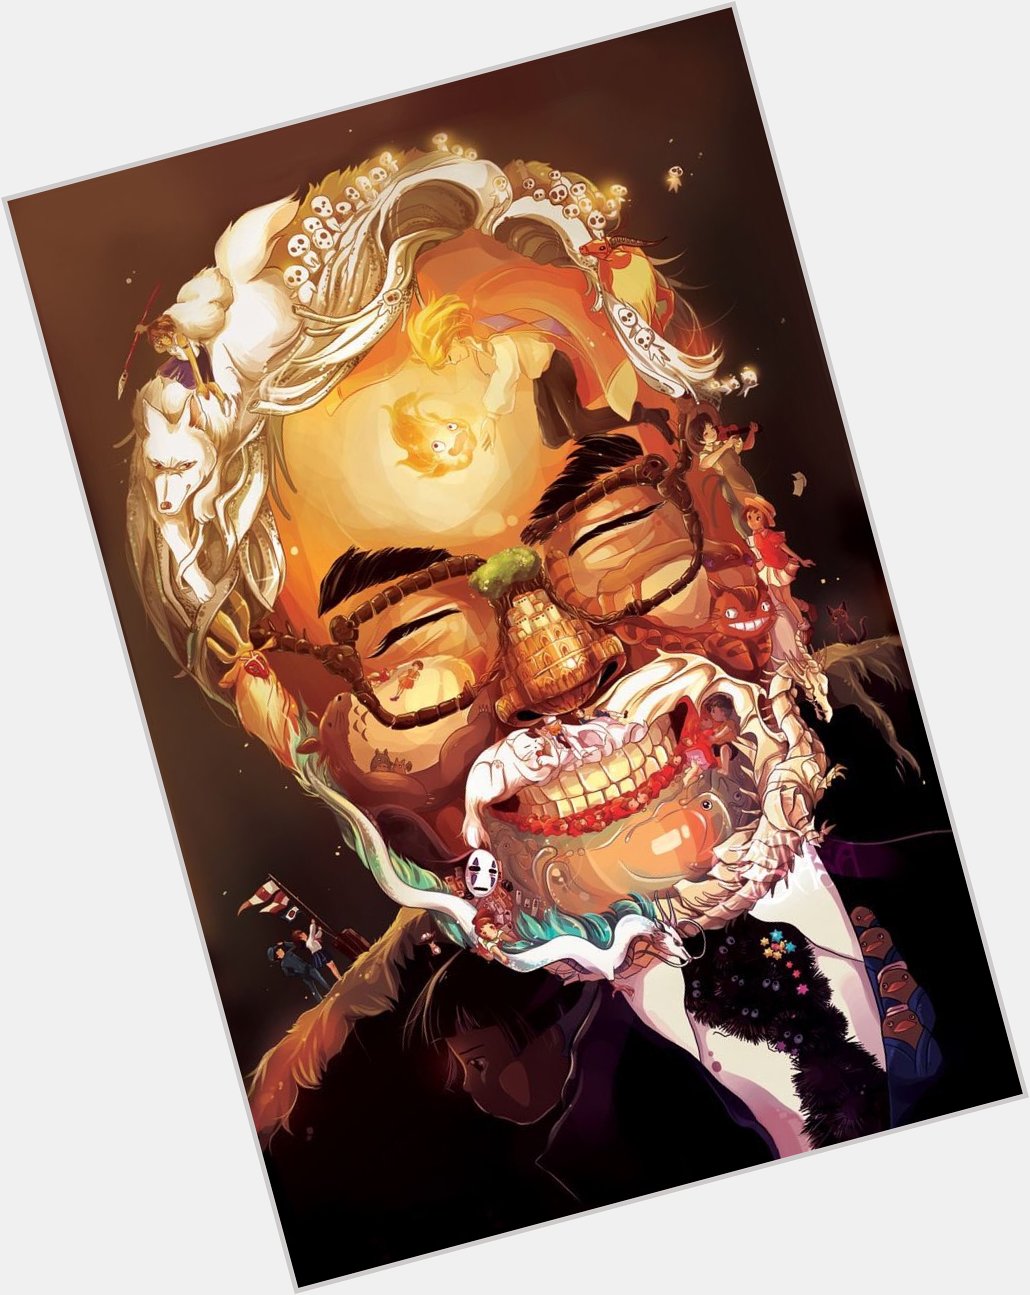 Happy 78th Birthday to Hayao Miyazaki!
His movies never fail to make me happy. 